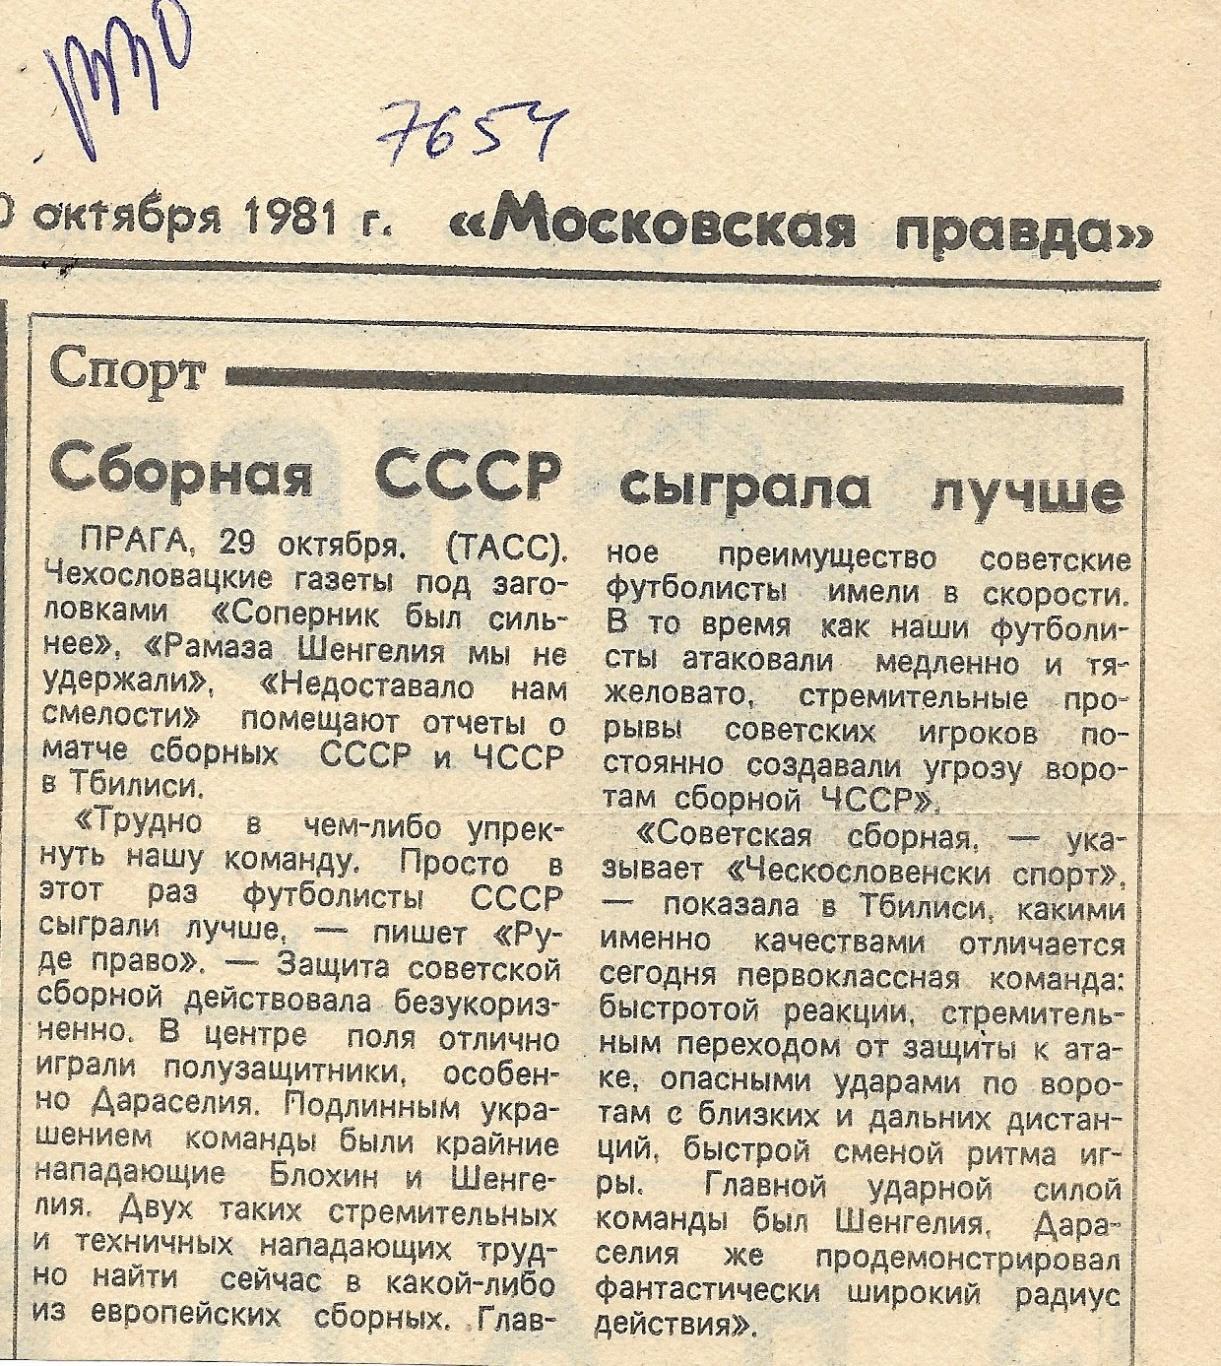 Сборная_СССР_сыграла_лучше_ 1981 (7654)